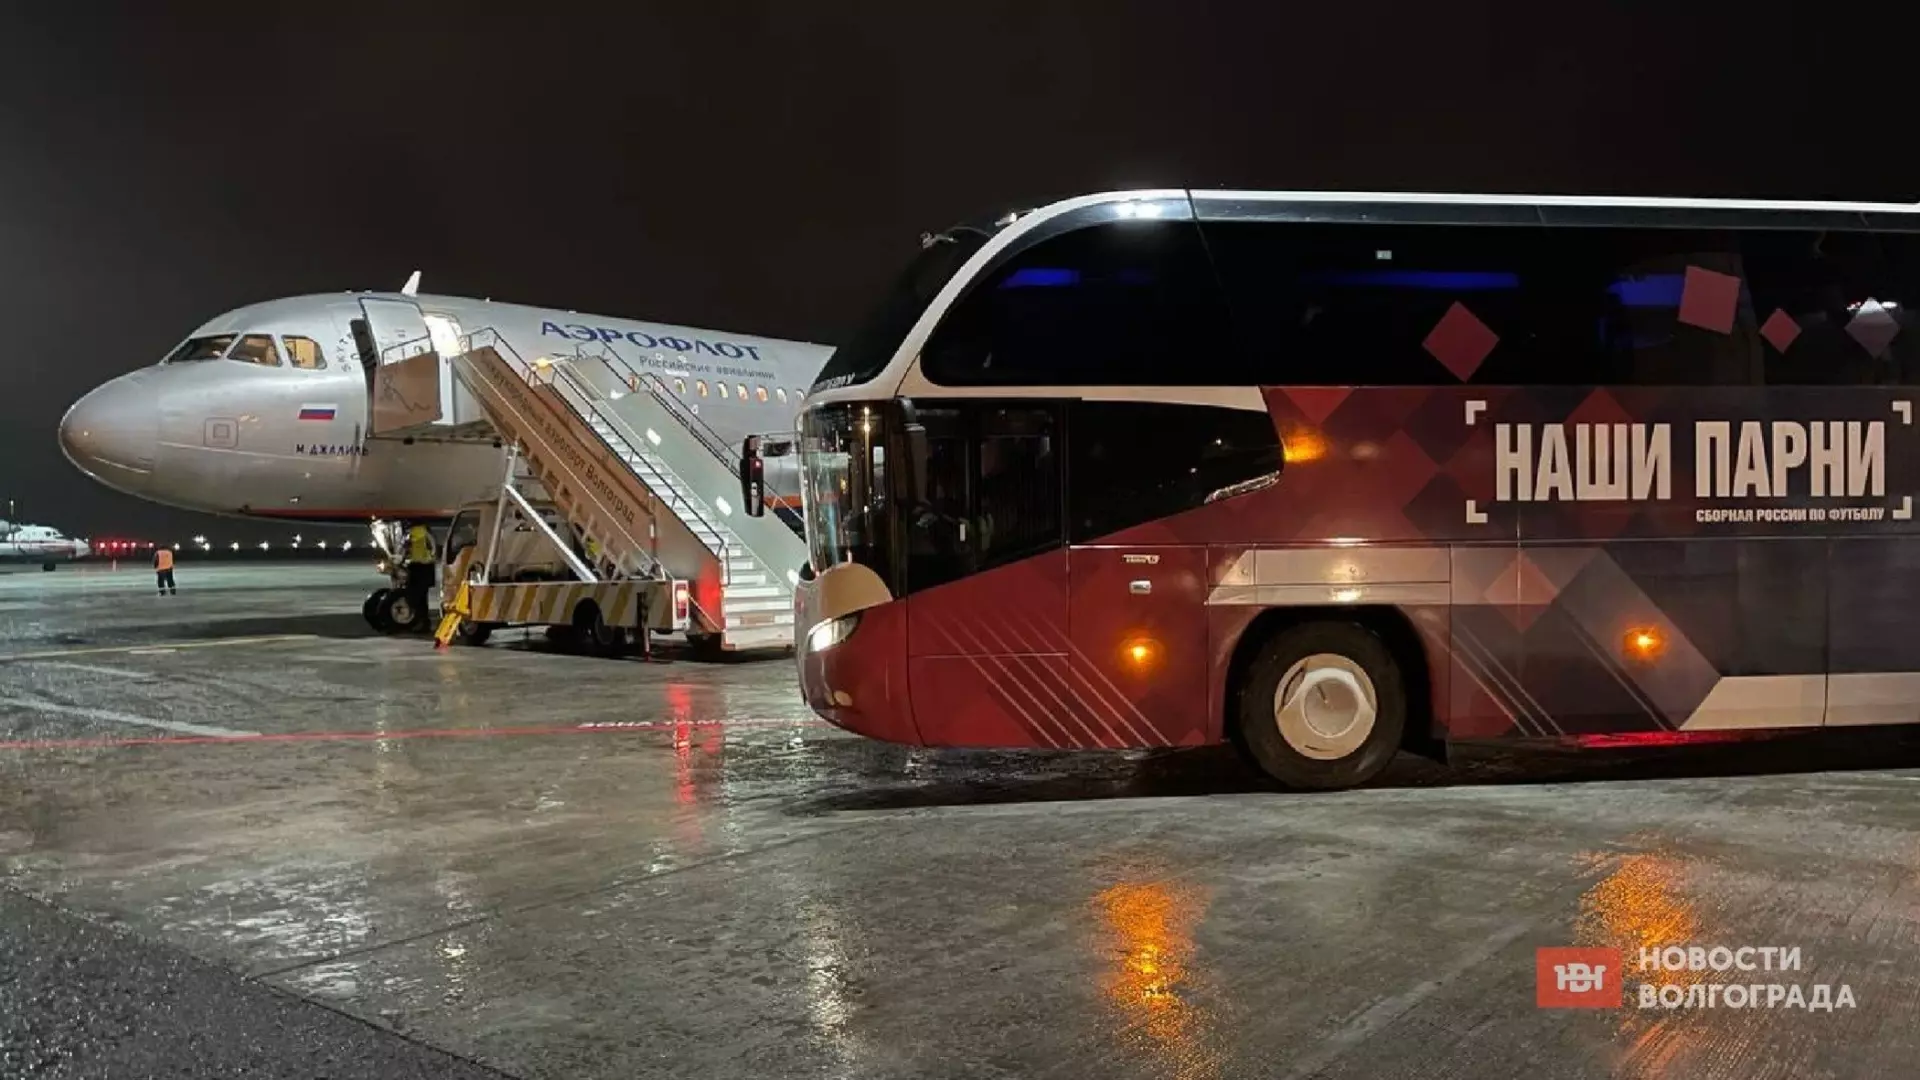 Сборная России прилетела в Волгоград специальным рейсом